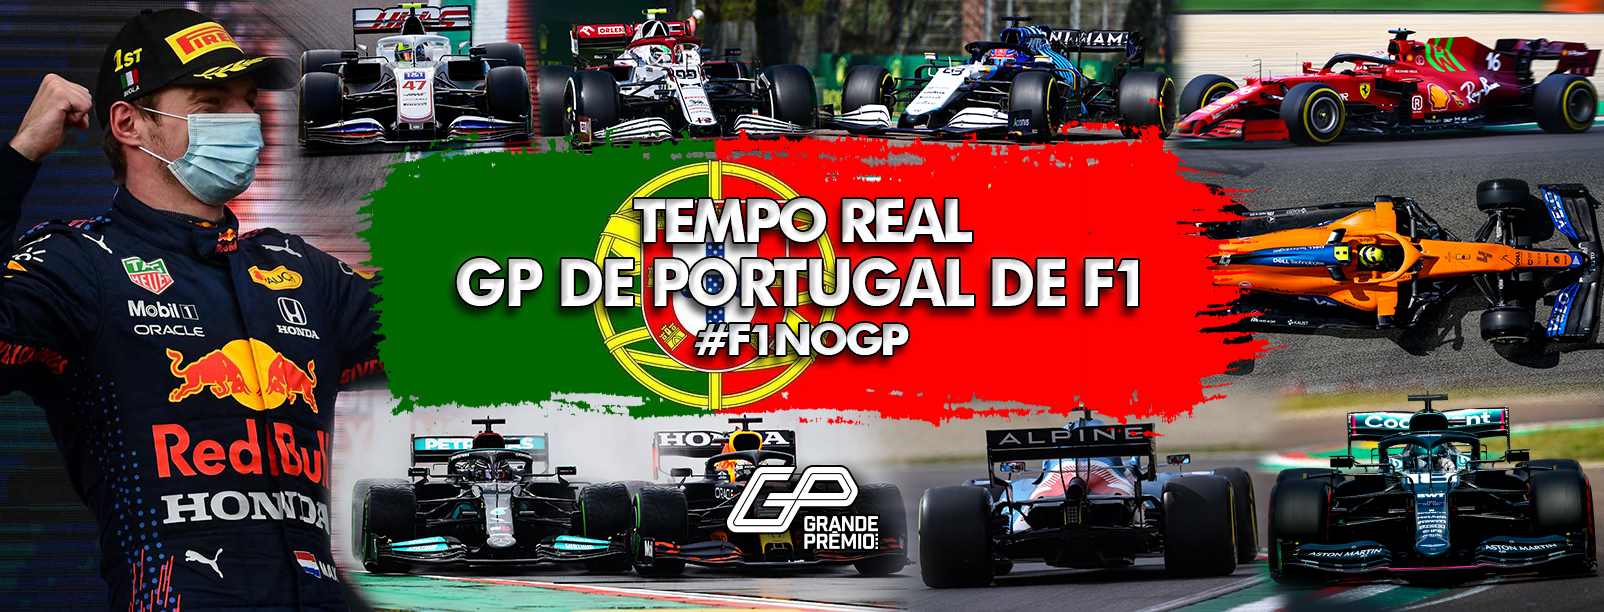 GP de Portugal de F1 2021 - classificação ao vivo - Fórmula 1 - Grande  Prêmio